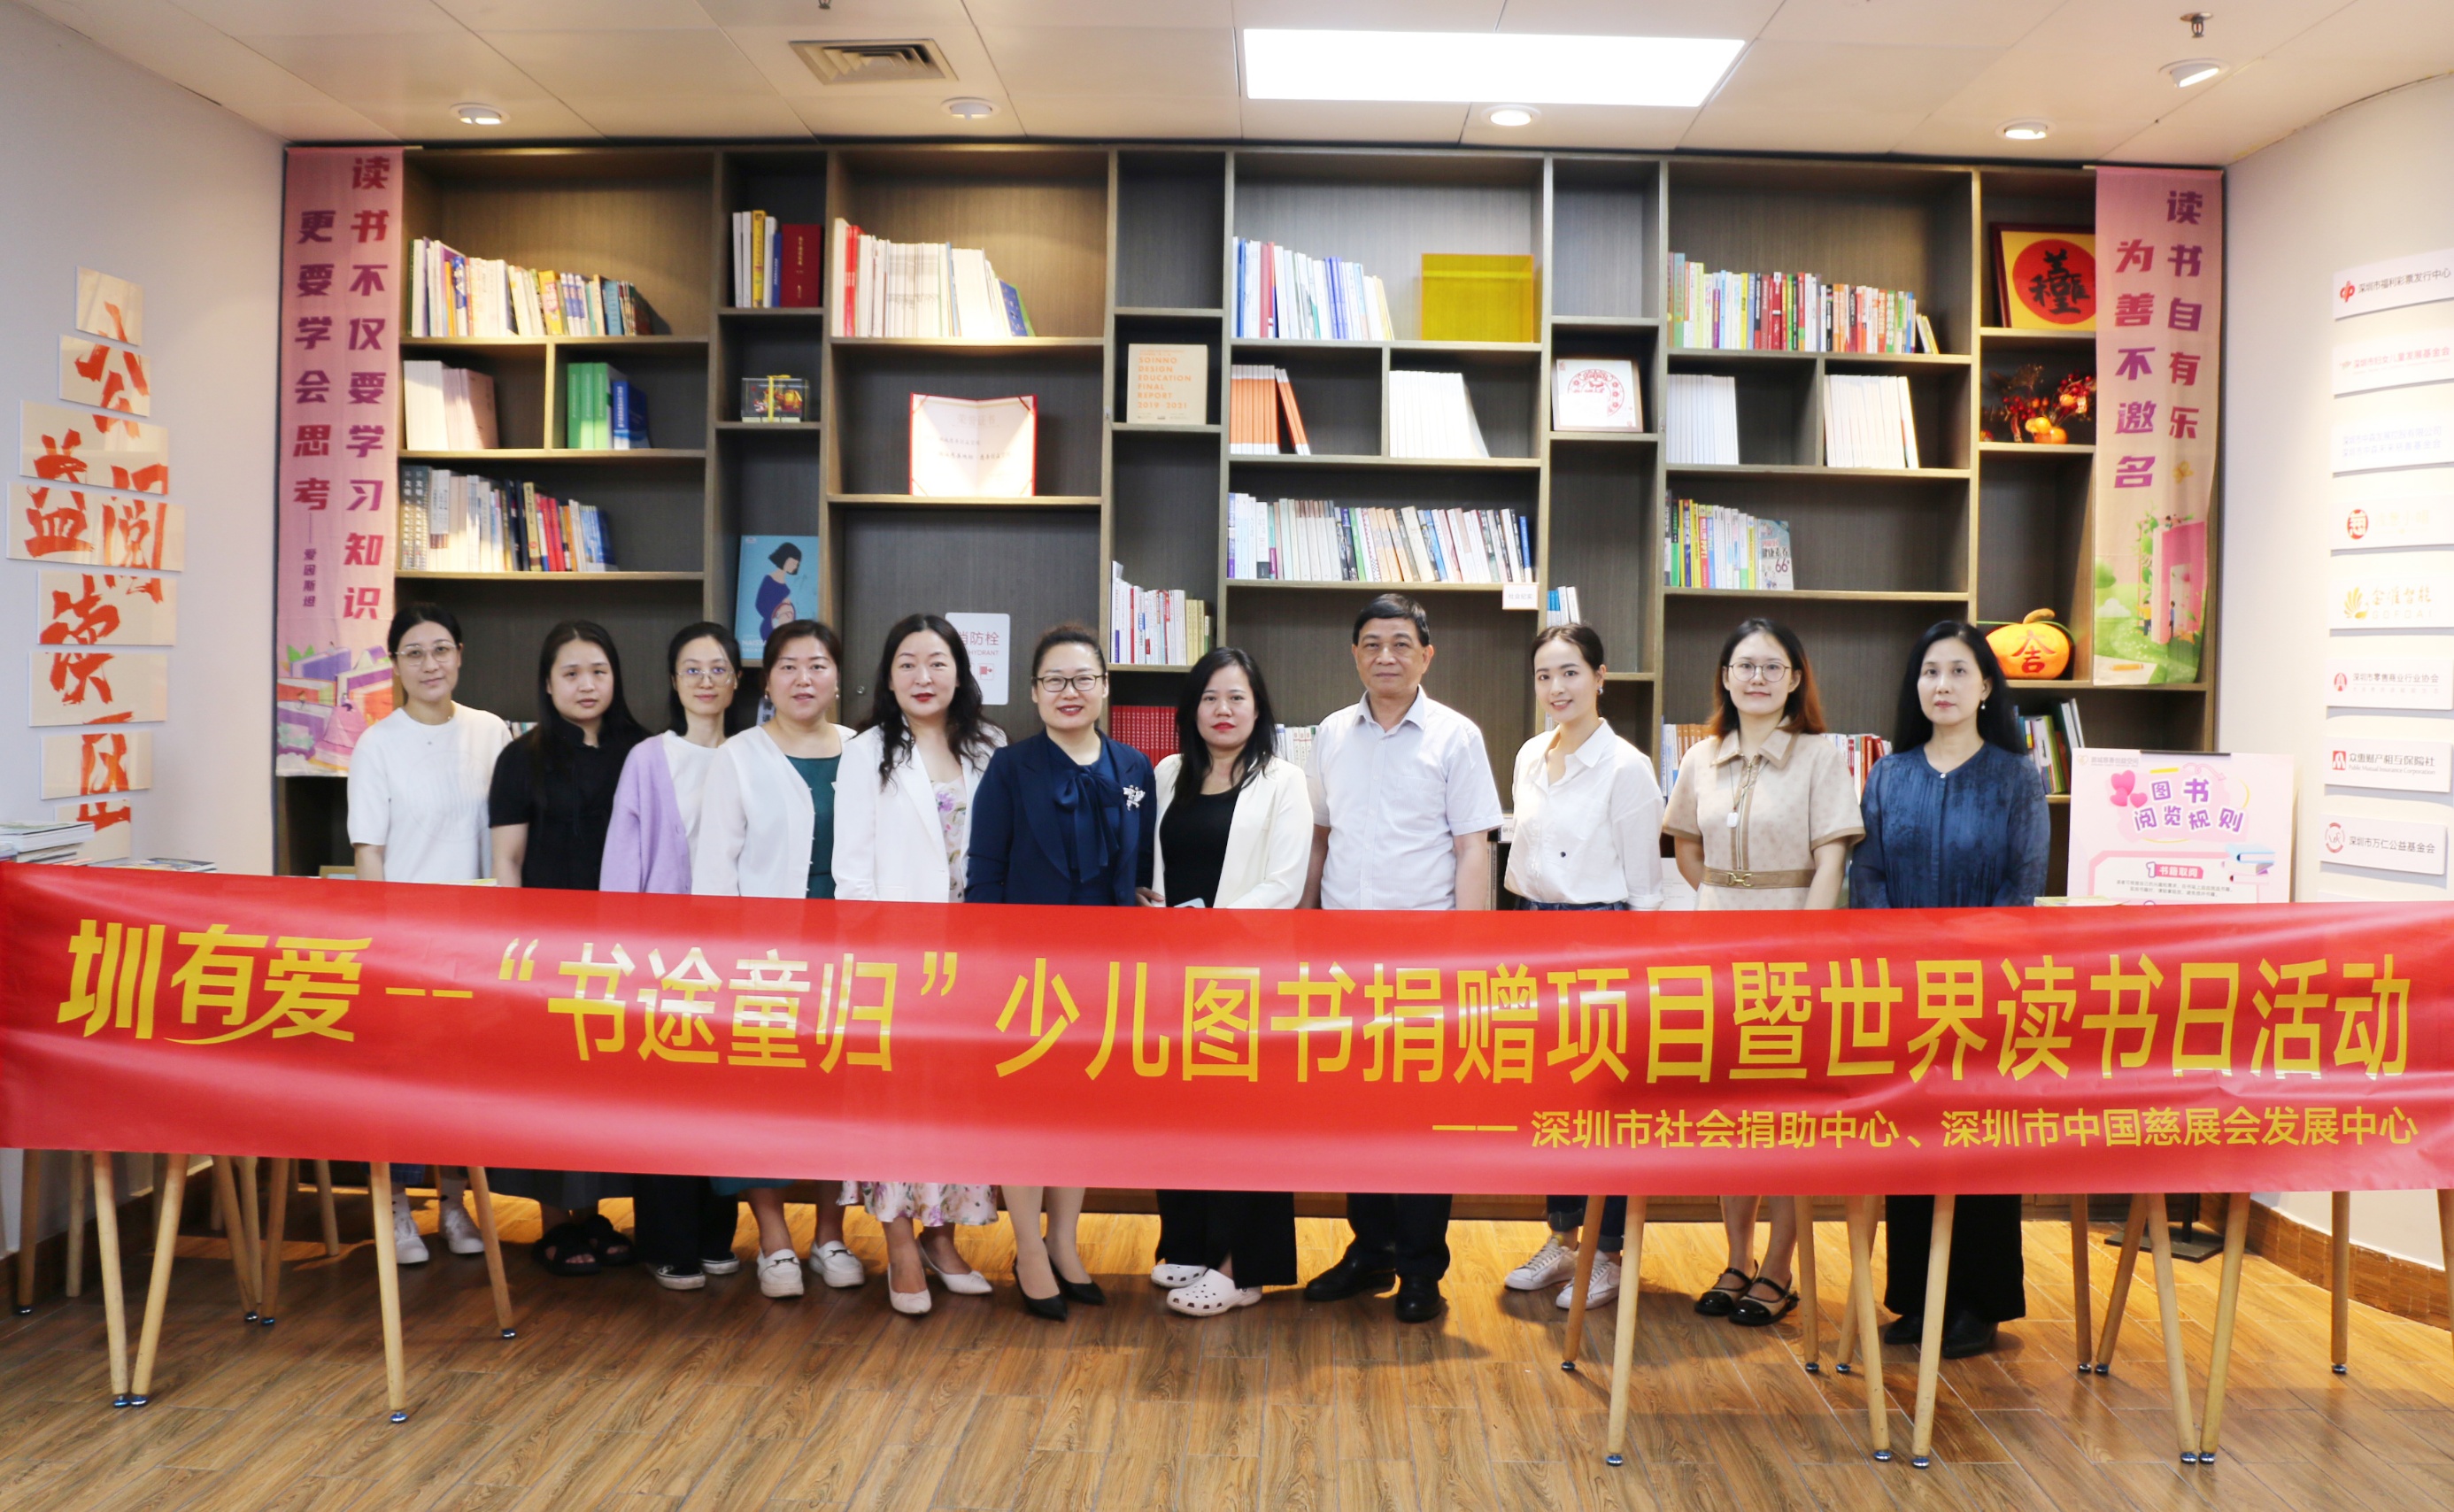 鵬城慈善創益空間公益閱讀區正式揭牌